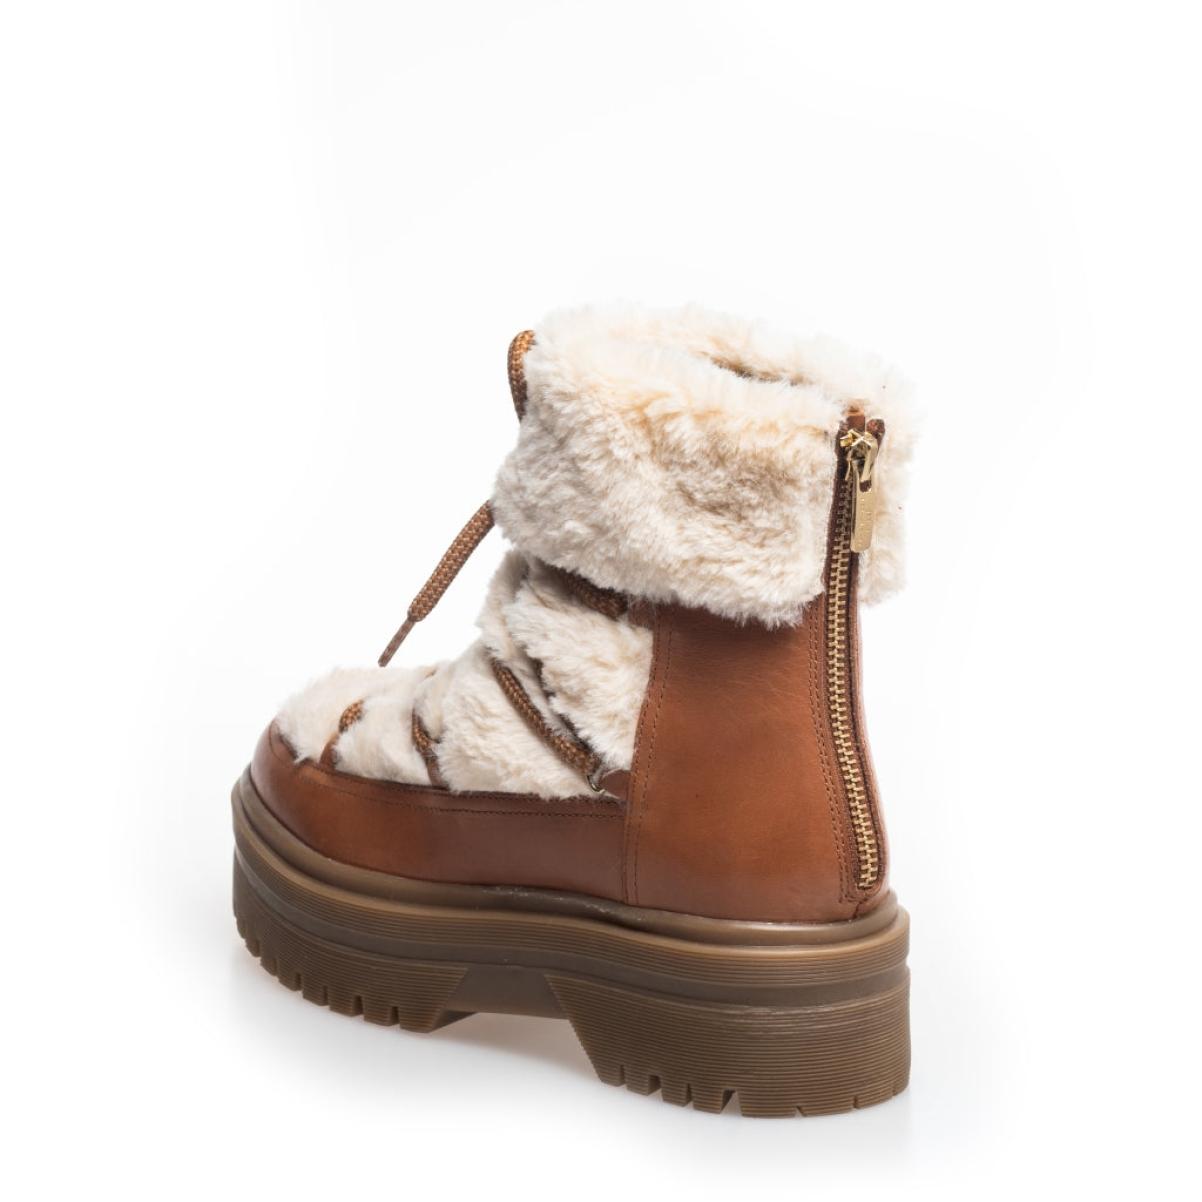 Lavish Snow By Snow 22 Low - Cognac Off-White Ankle Boots Women Copenhagen Shoes - 2